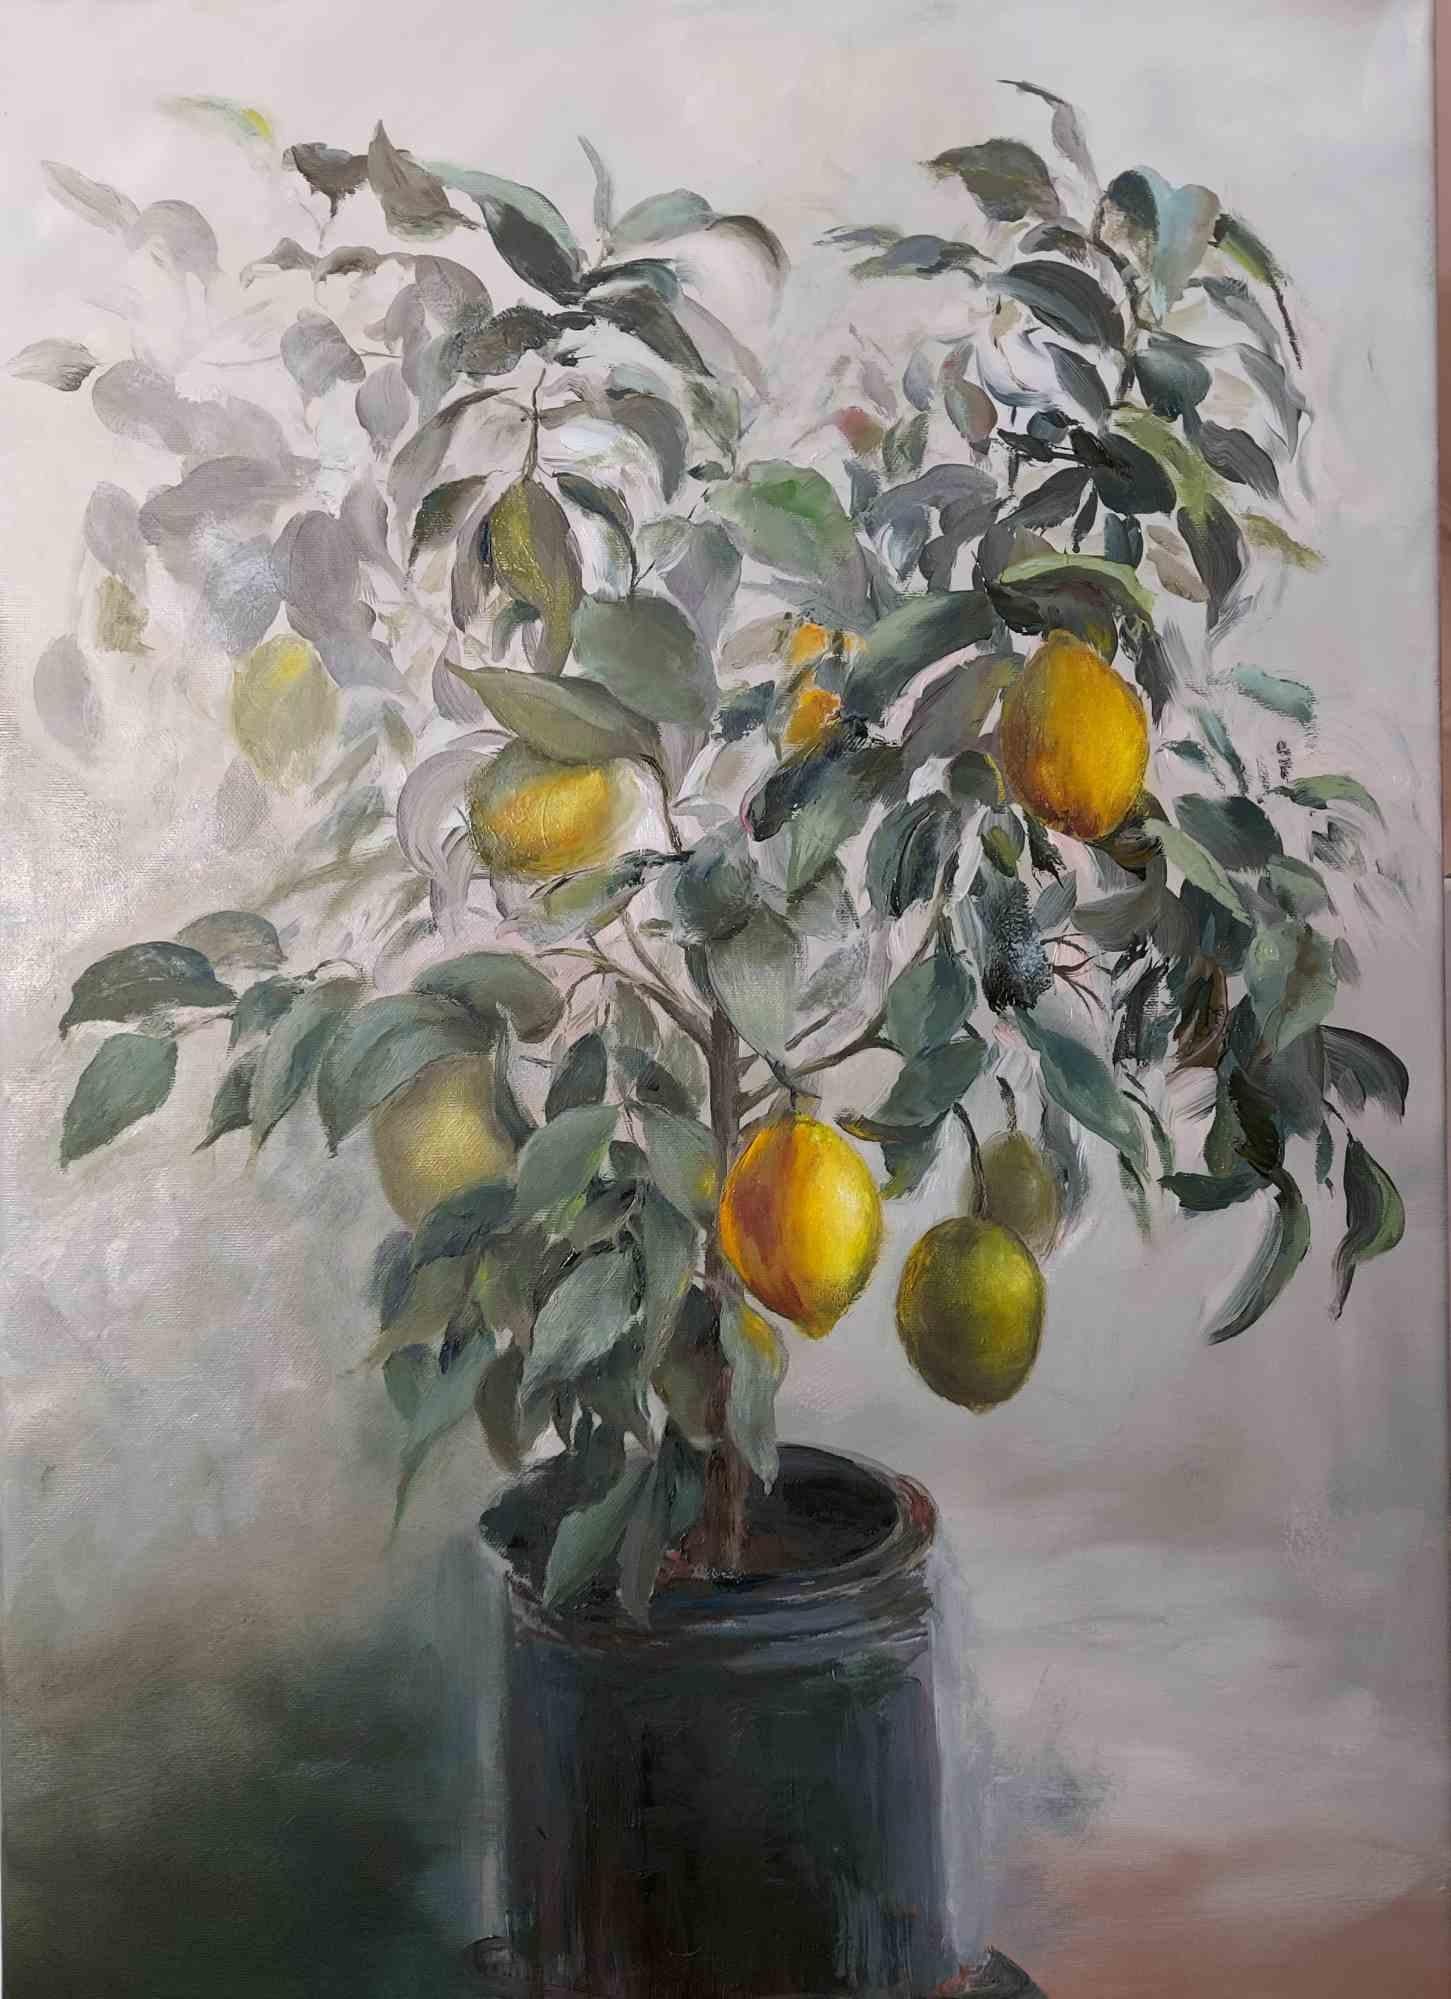 Ölgemälde auf Leinwand von Elena Mardashova, 70x50 cm, geschaffen, um das Gefühl eines echten, lebendigen Zitronenbaums zu vermitteln, der in der Küche von jemandem fantastisch aussehen könnte. 

 